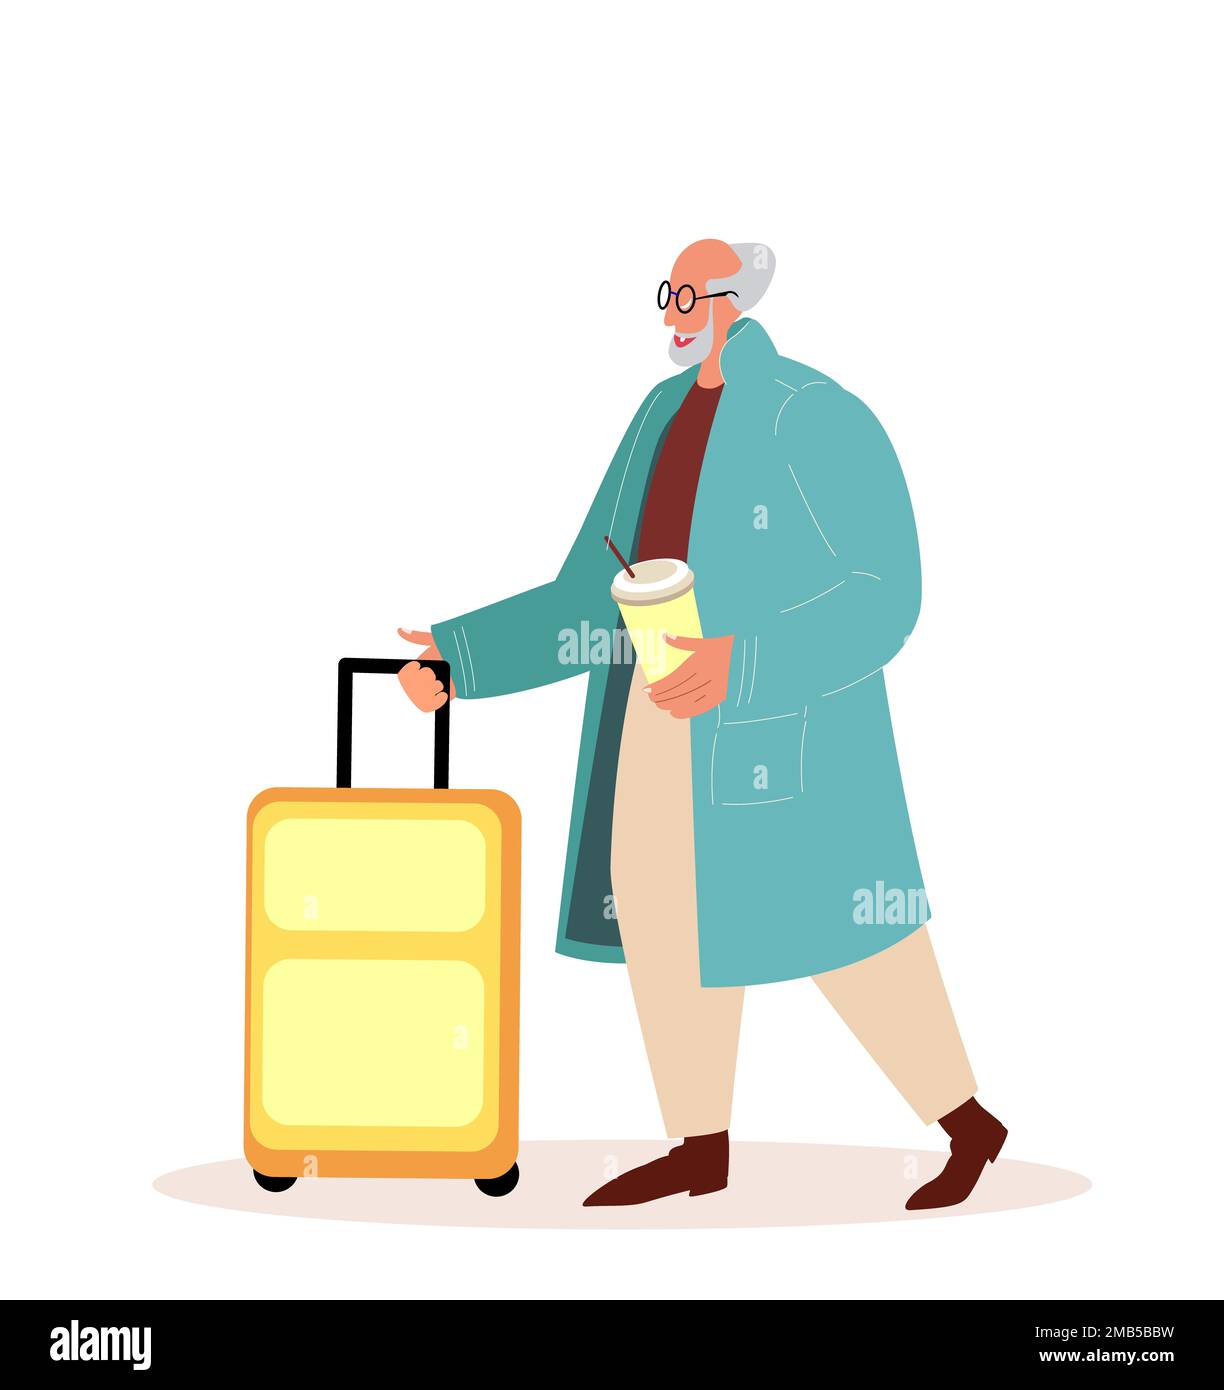 Âgé Pensioner Man with Luggage Suitcase.Retired Senior Tourist Character aller à l'enregistrement à l'aéroport, personne âgée Voyage à l'étranger. V plat Banque D'Images